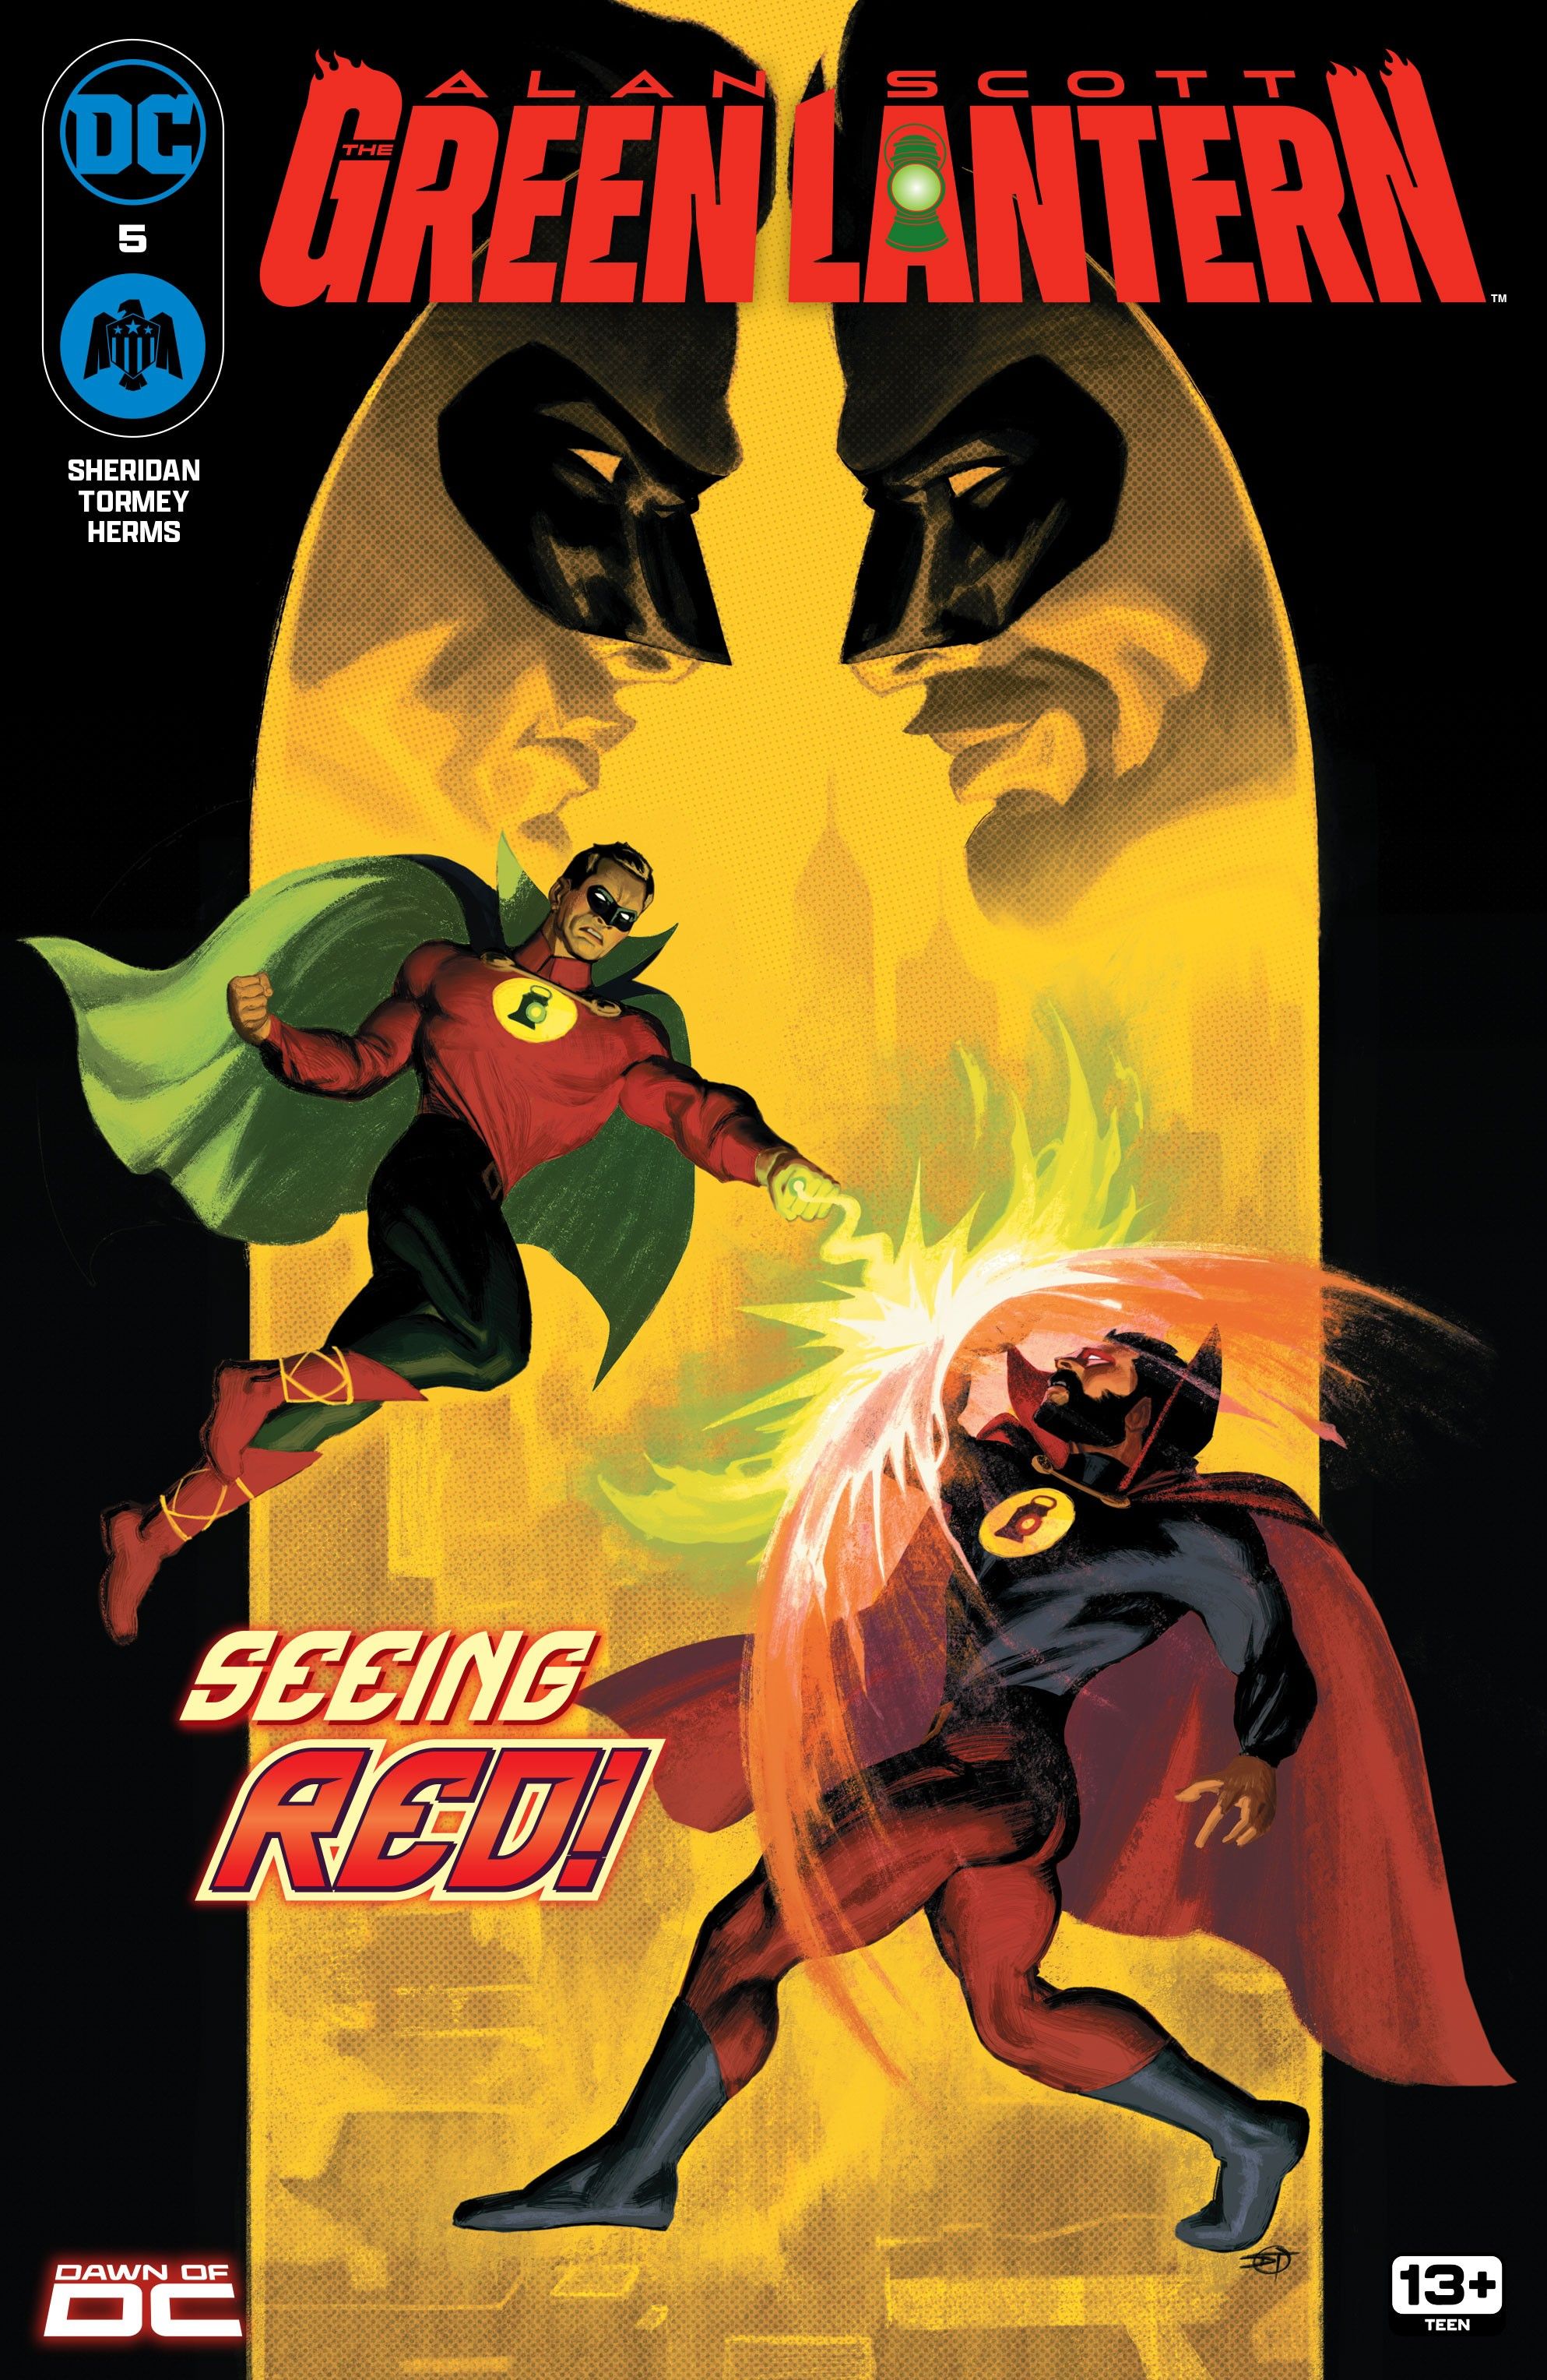 Image of Alan Scott Green Lantern fighting the Red Lantern